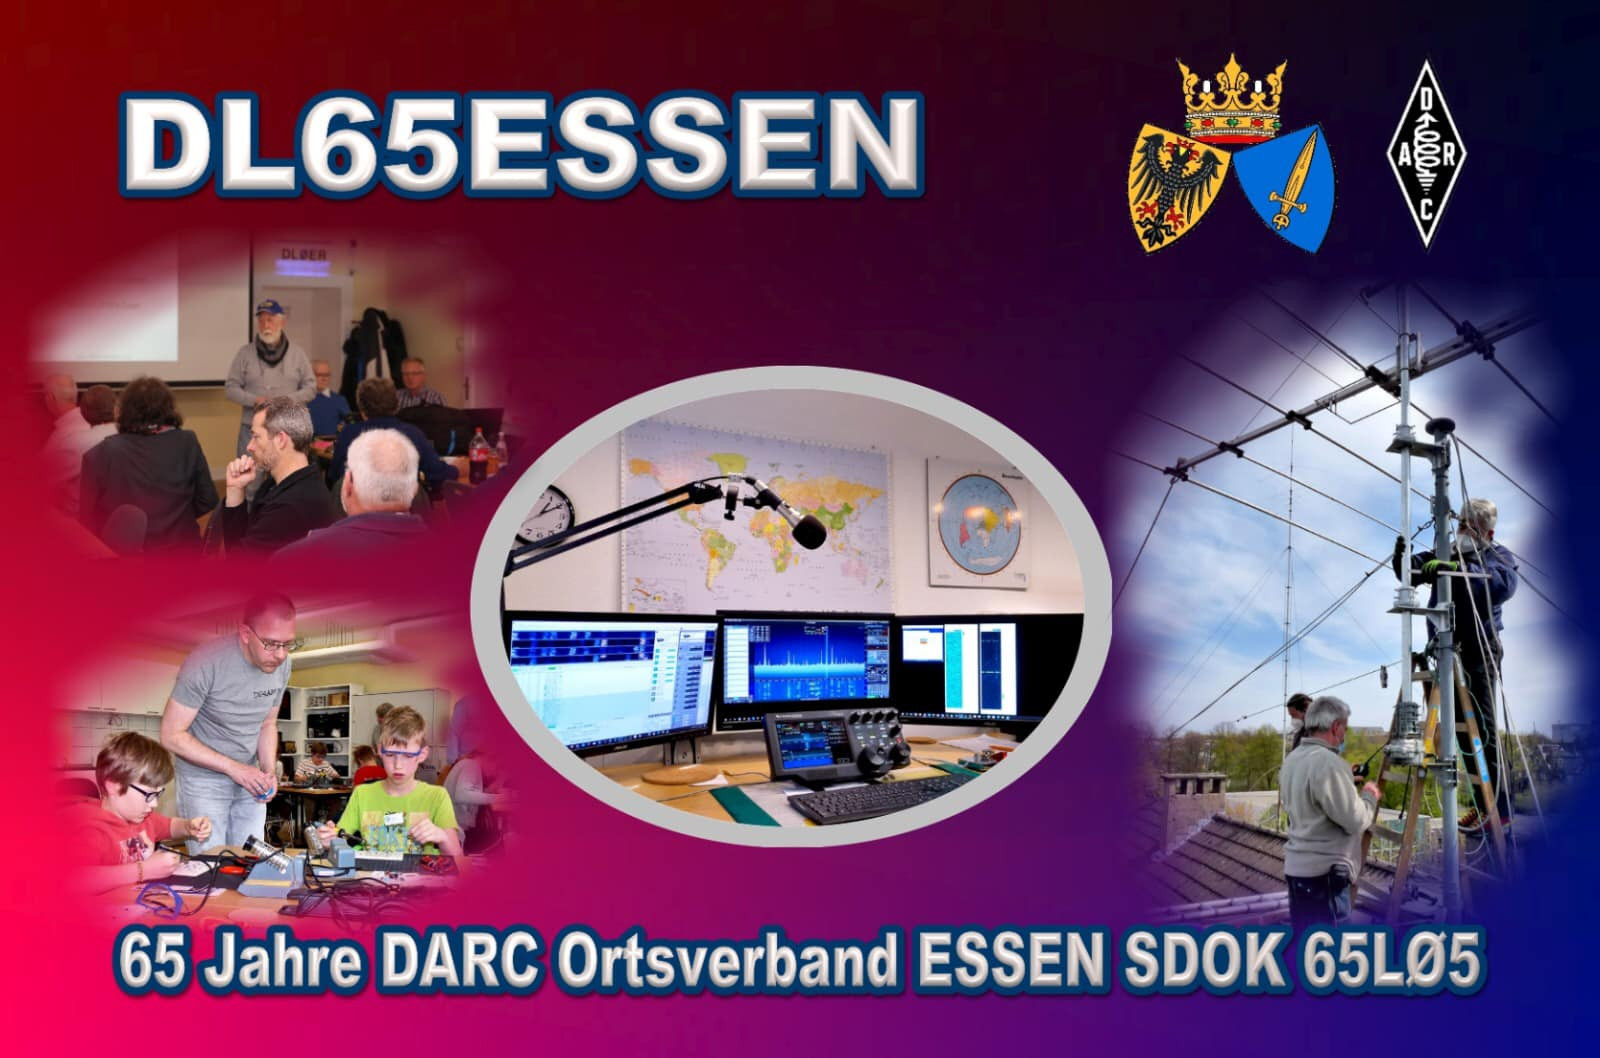 DL65ESSEN Essen, Germany DX News